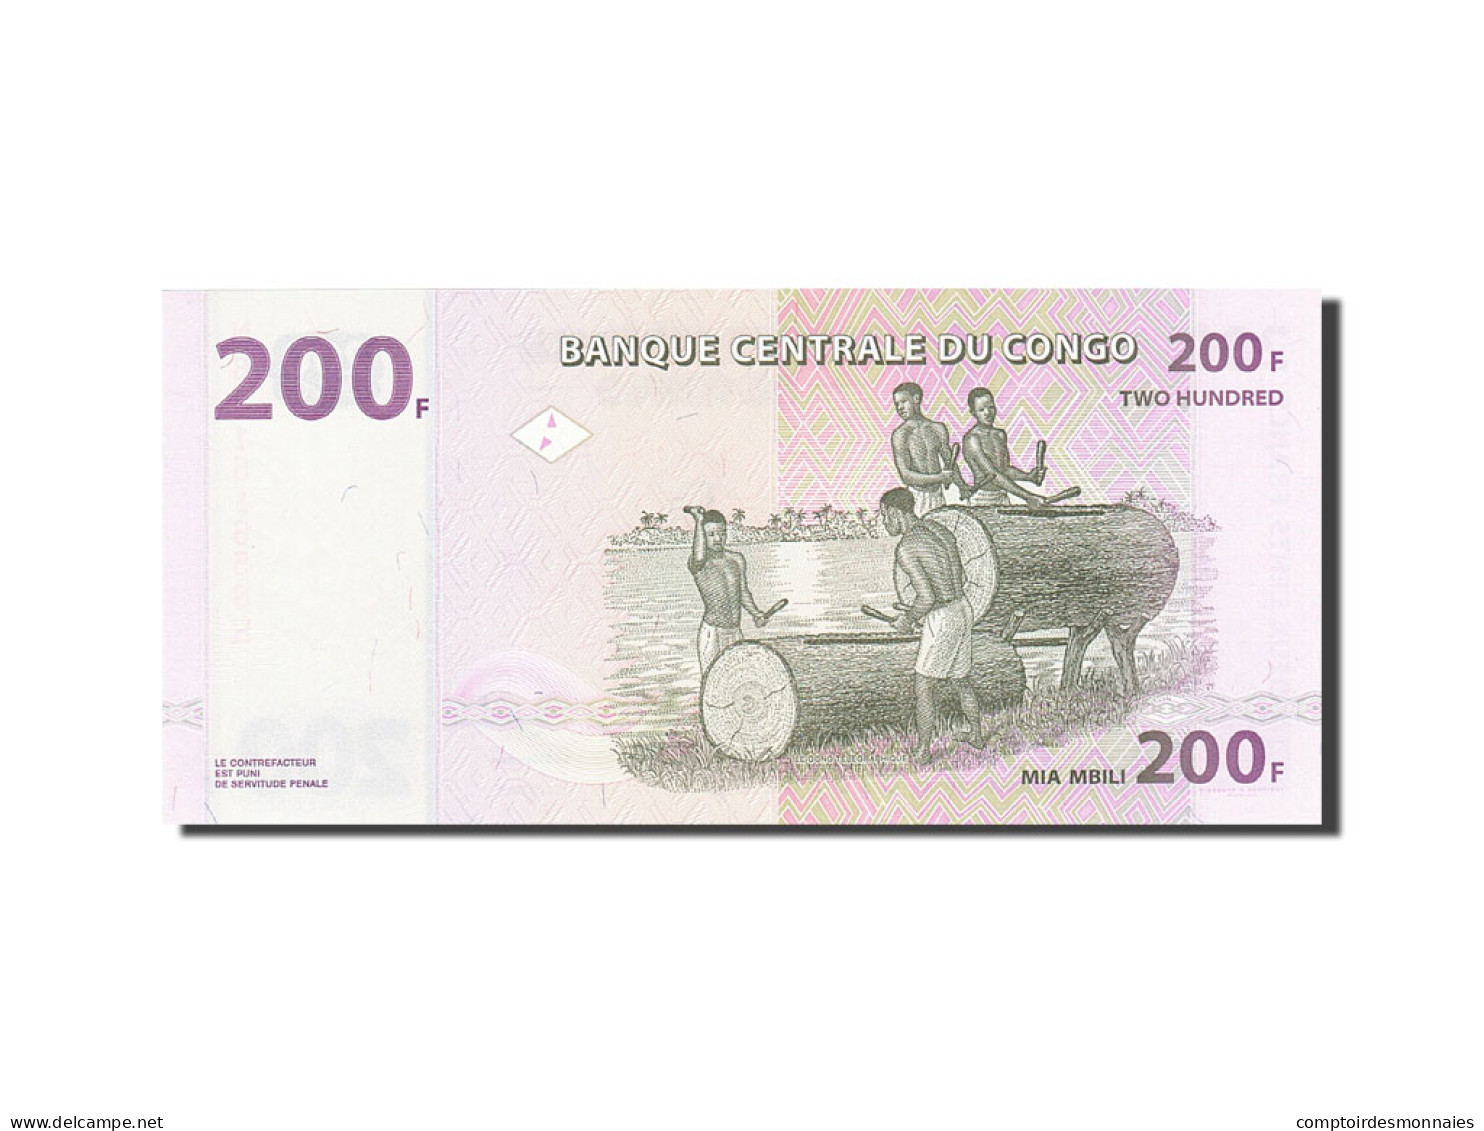 Billet, Congo Democratic Republic, 200 Francs, 2007, 2007-07-31, KM:99a, NEUF - Repubblica Democratica Del Congo & Zaire